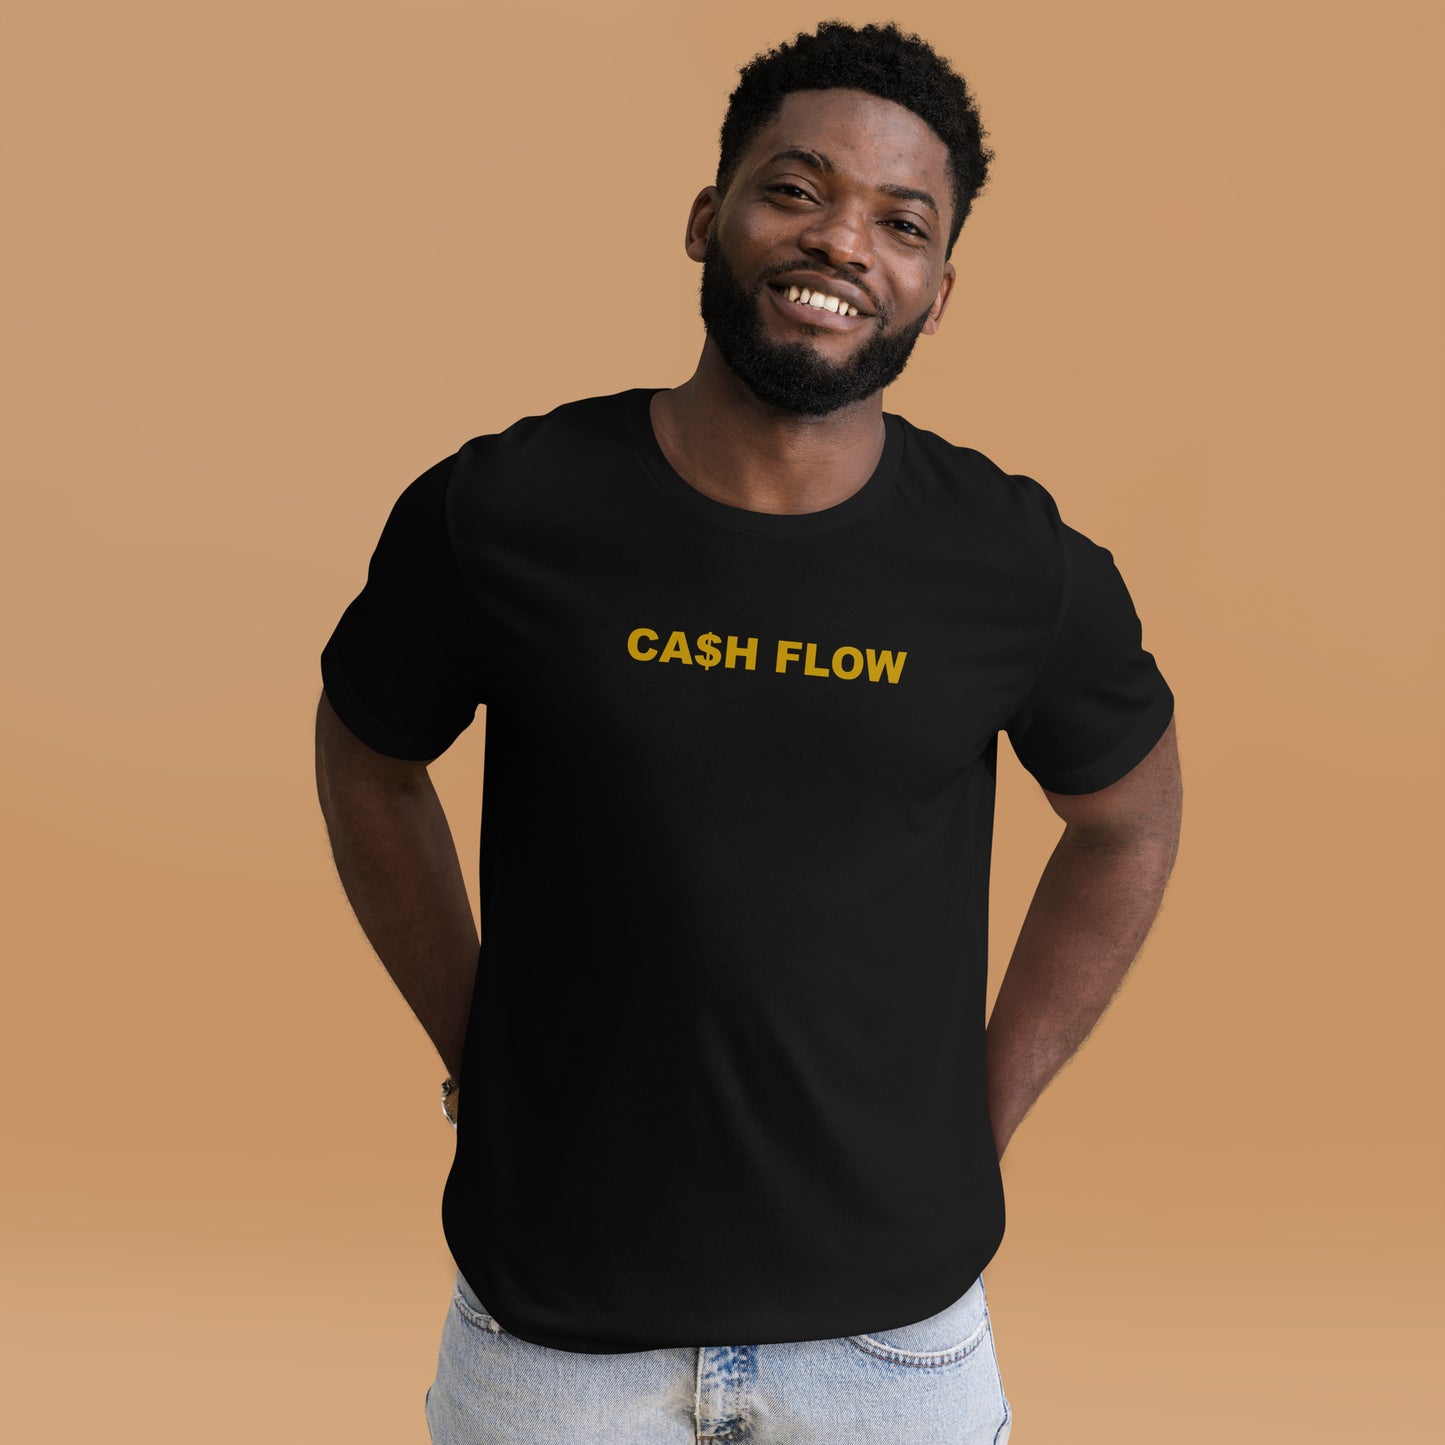 CA$H FLOW - GOLD TEXT - T-SHIRT